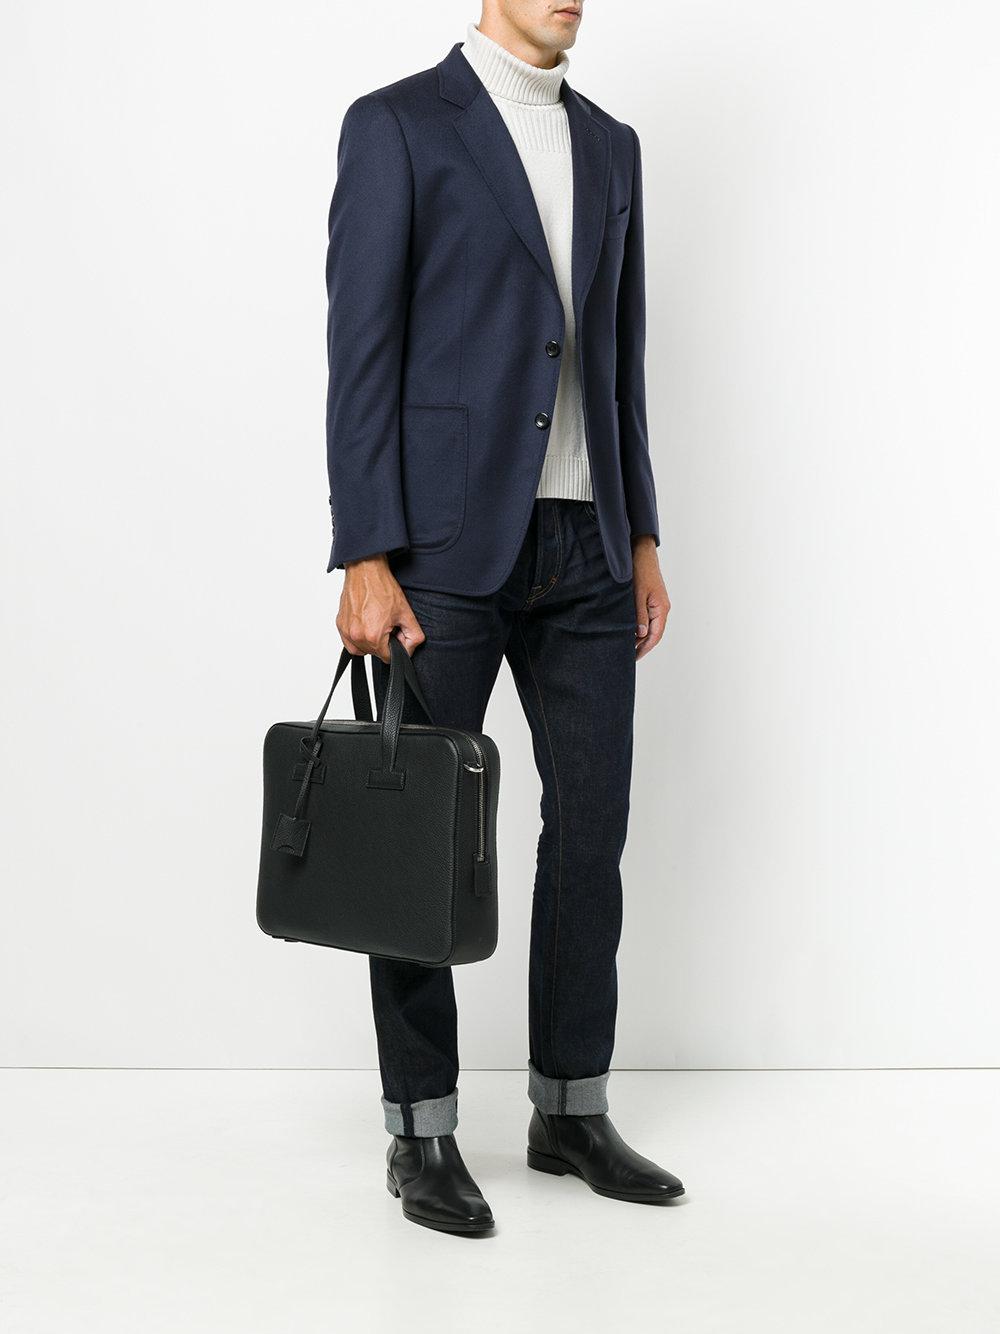 Tom Ford Leather Laptop Bag in Black for Men - Lyst